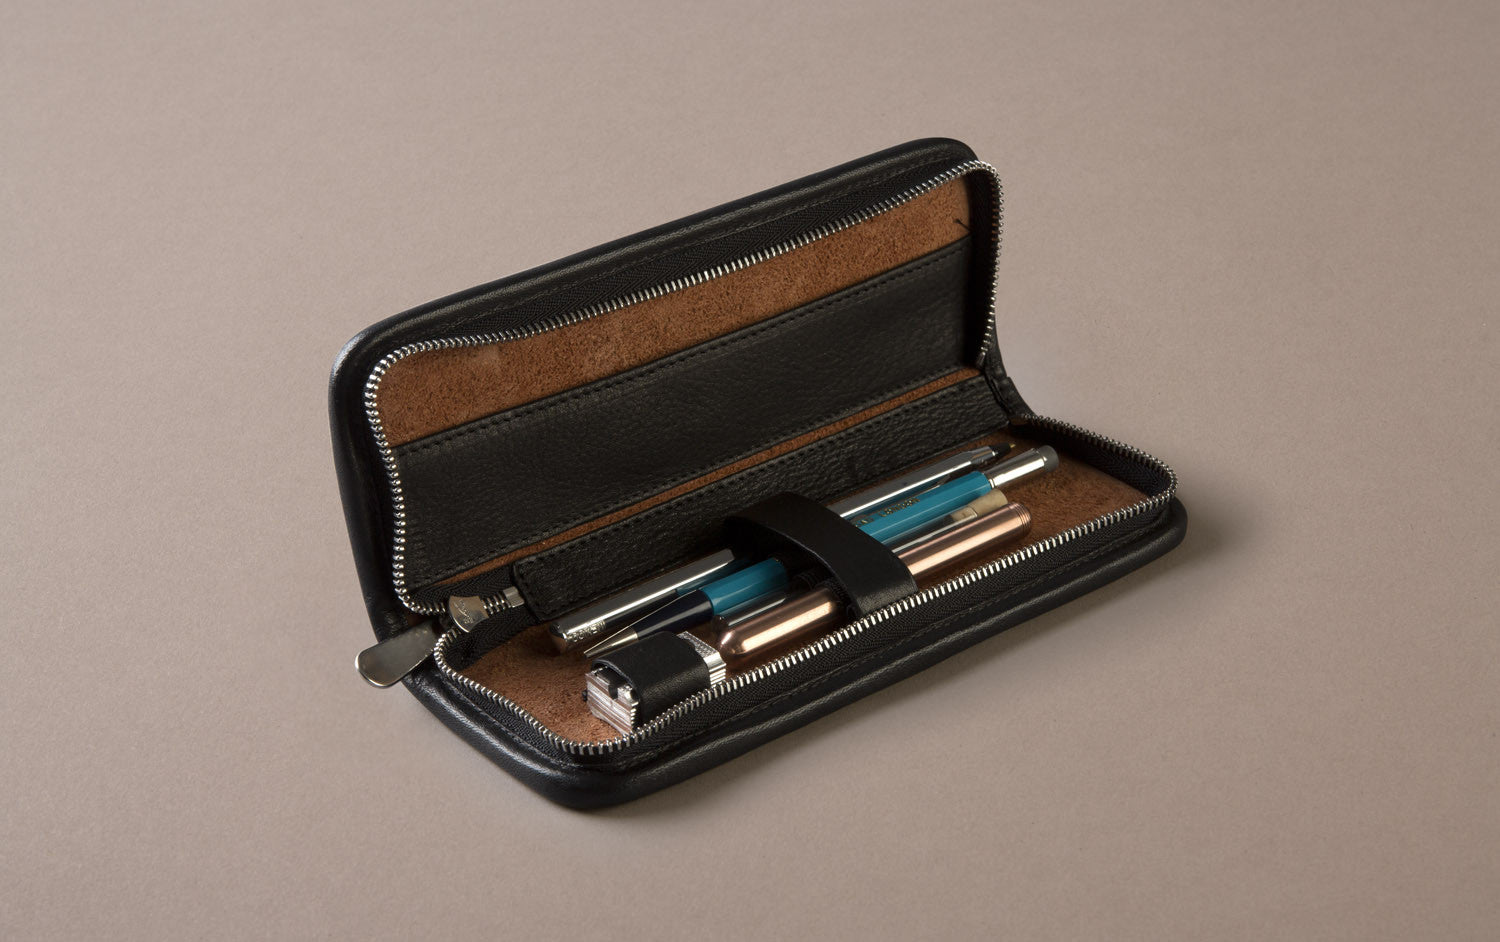 leather pencil case